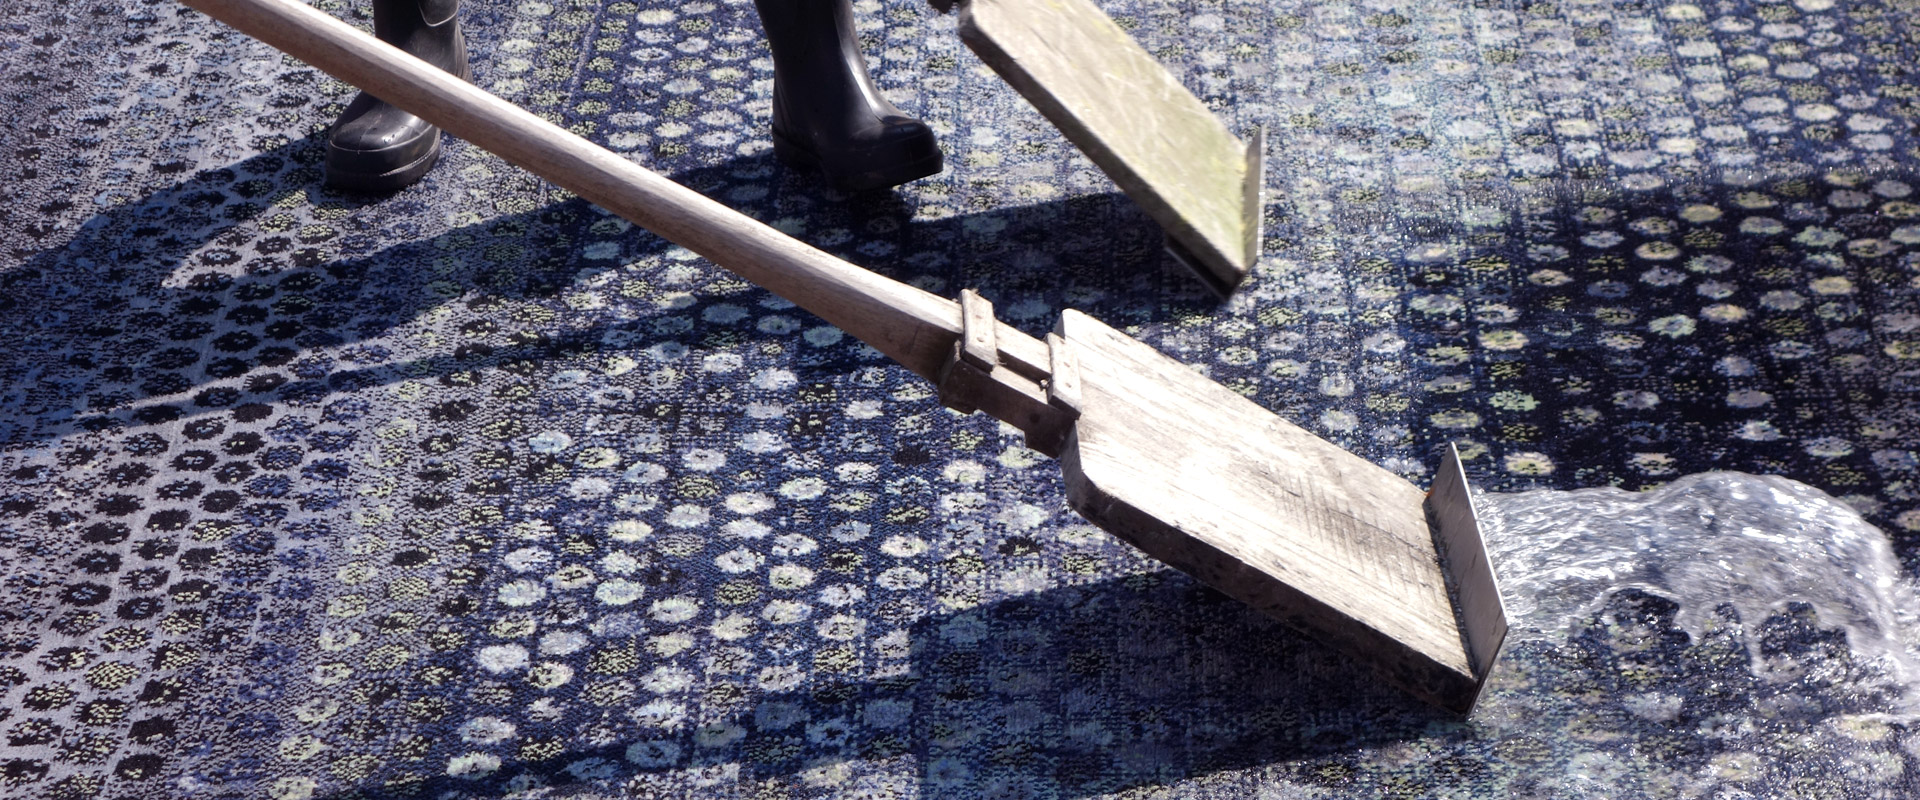 Nahaufnahme eines traditionellen Holzschaukelstuhls mit geschwungenen Kufen auf einem gemusterten Teppich im Sonnenlicht, wobei nur der untere Teil des Stuhls und der Füße einer Person sichtbar ist.